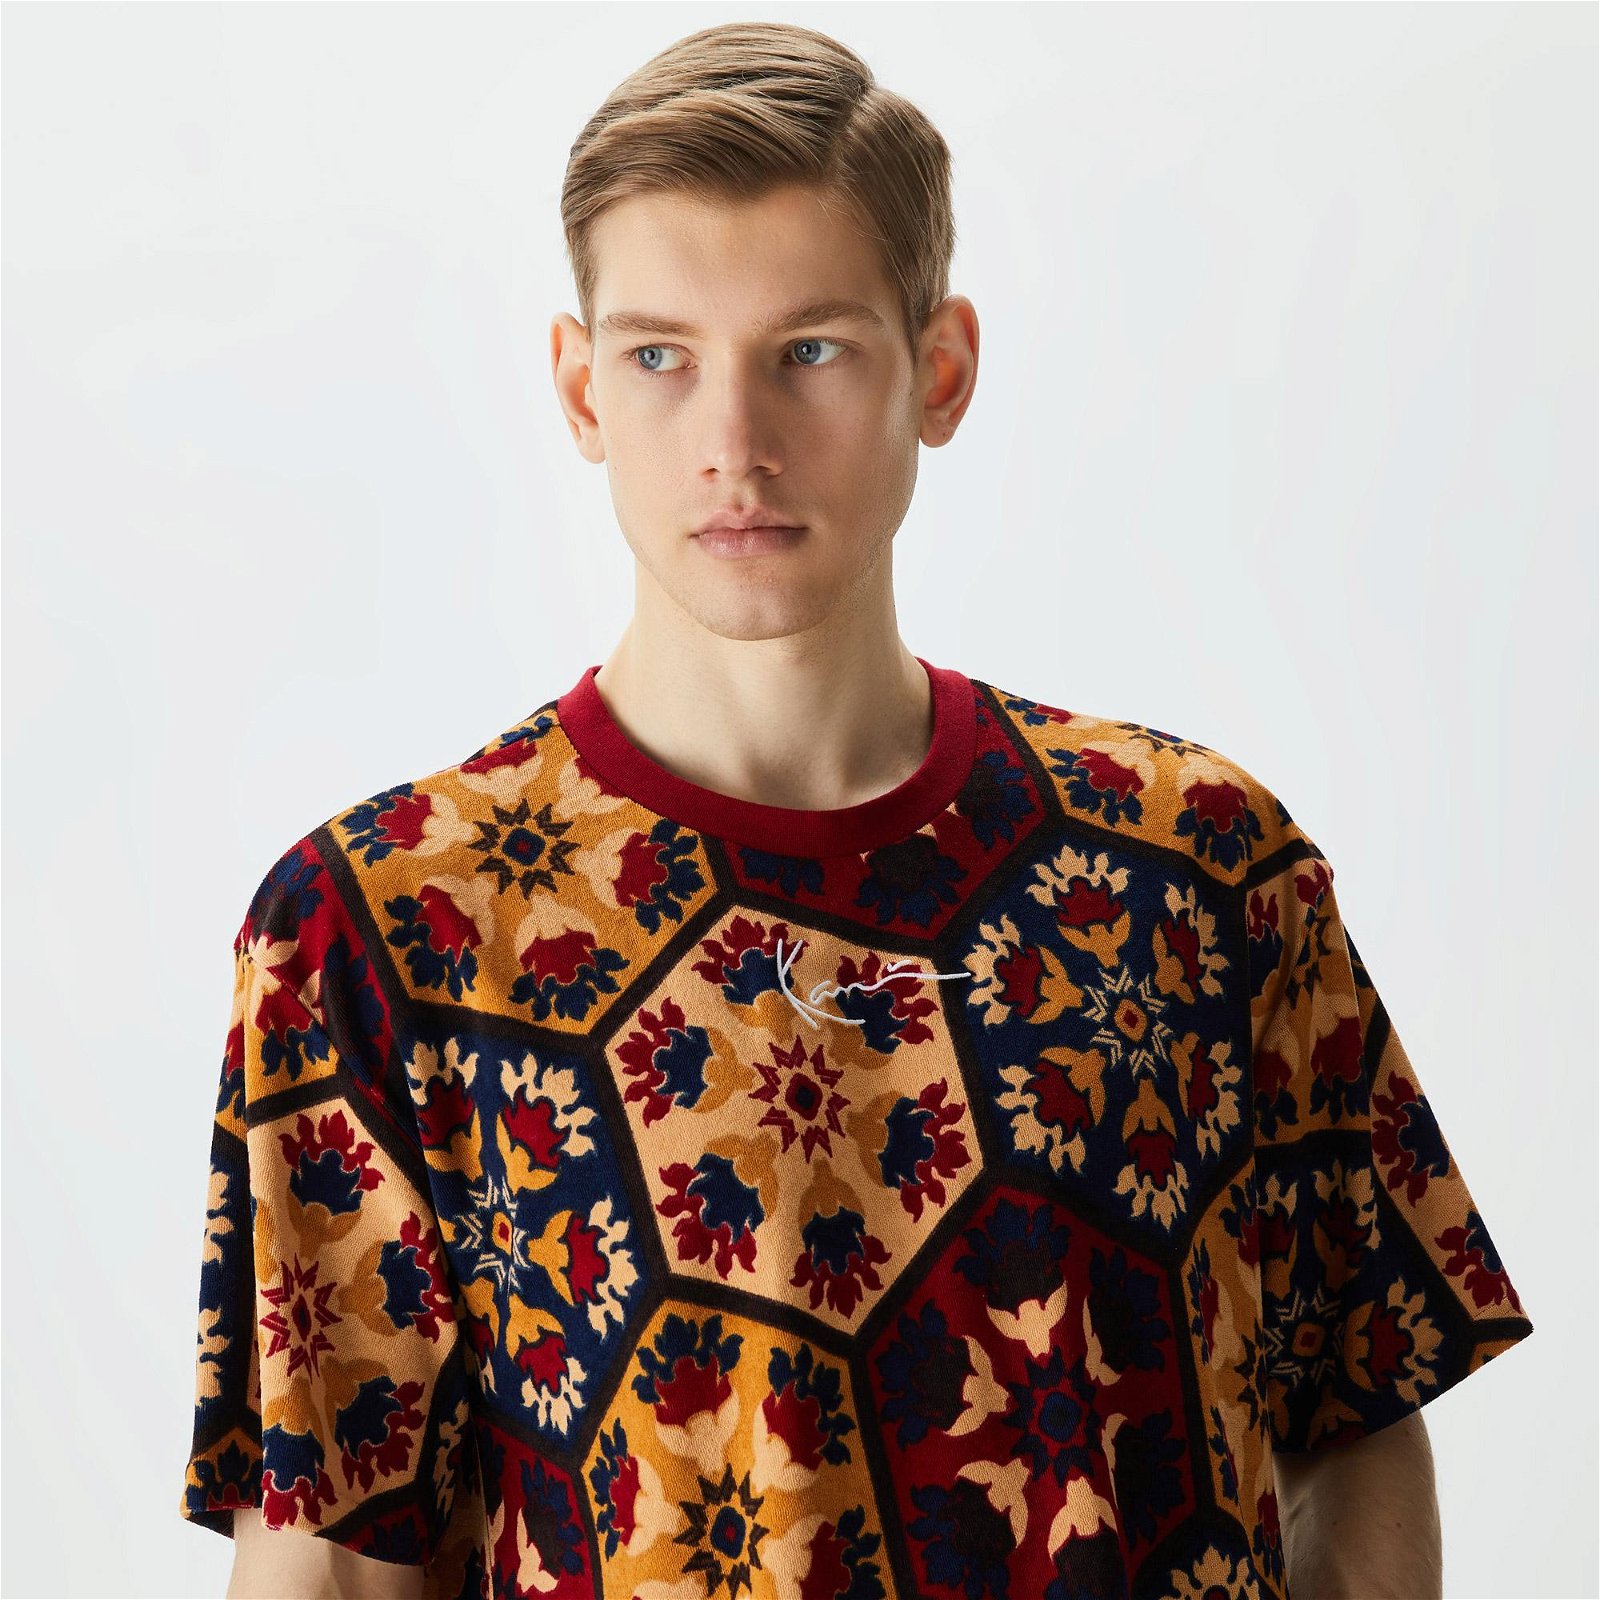 Karl Kani Small Signature Tile Towelling Erkek Renkli T-Shirt